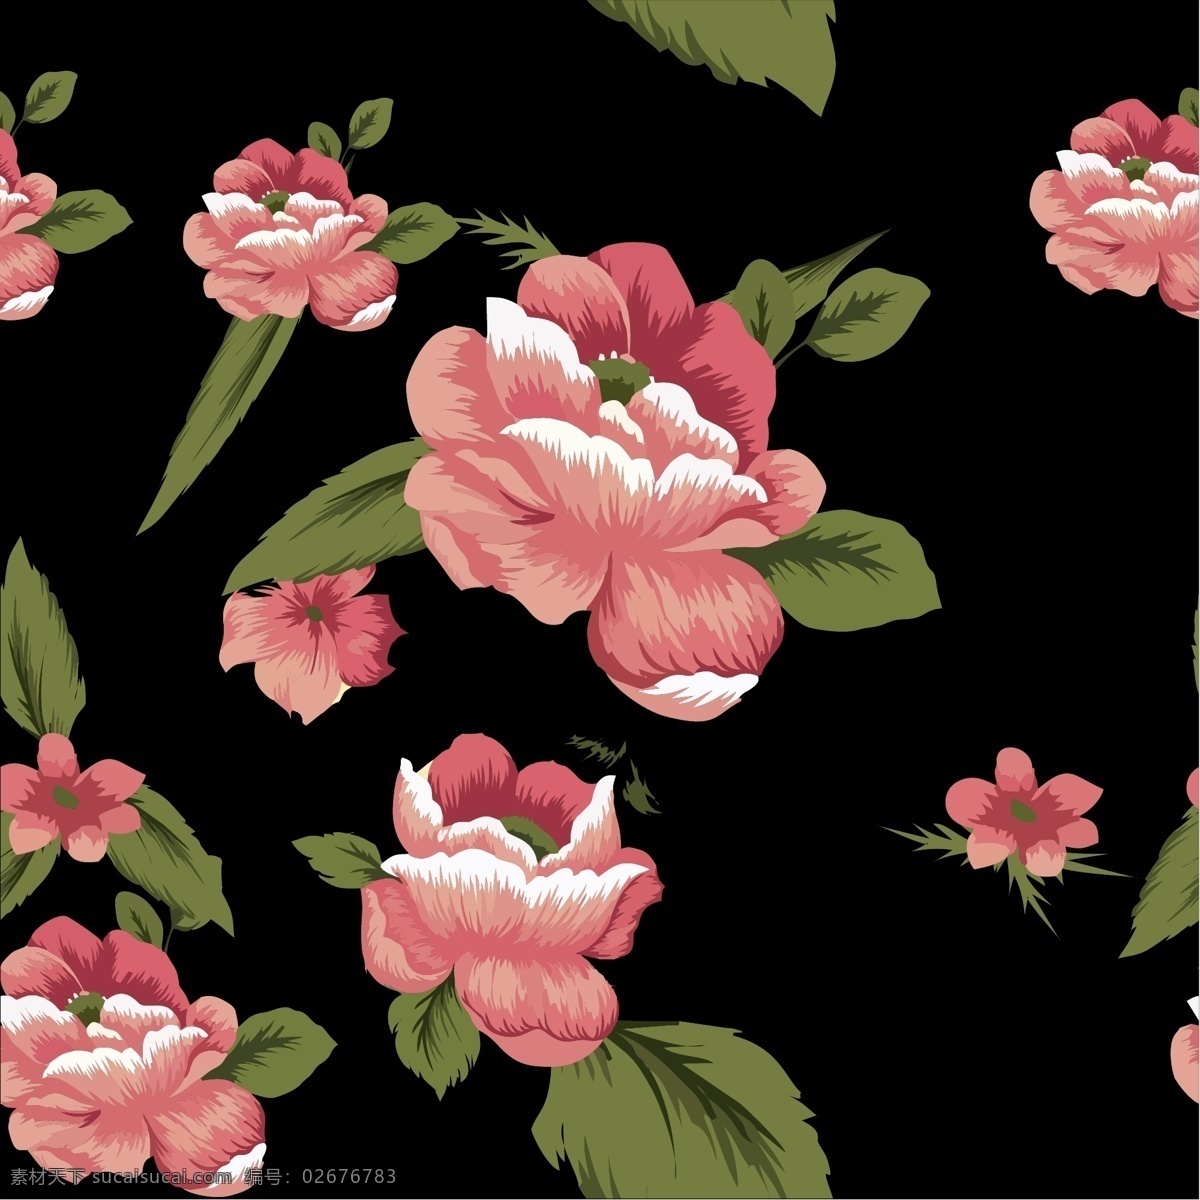 潮流 面料 玫瑰 印花 花卉 矢量图 面料印花设计 底纹背景 底纹边框 矢量